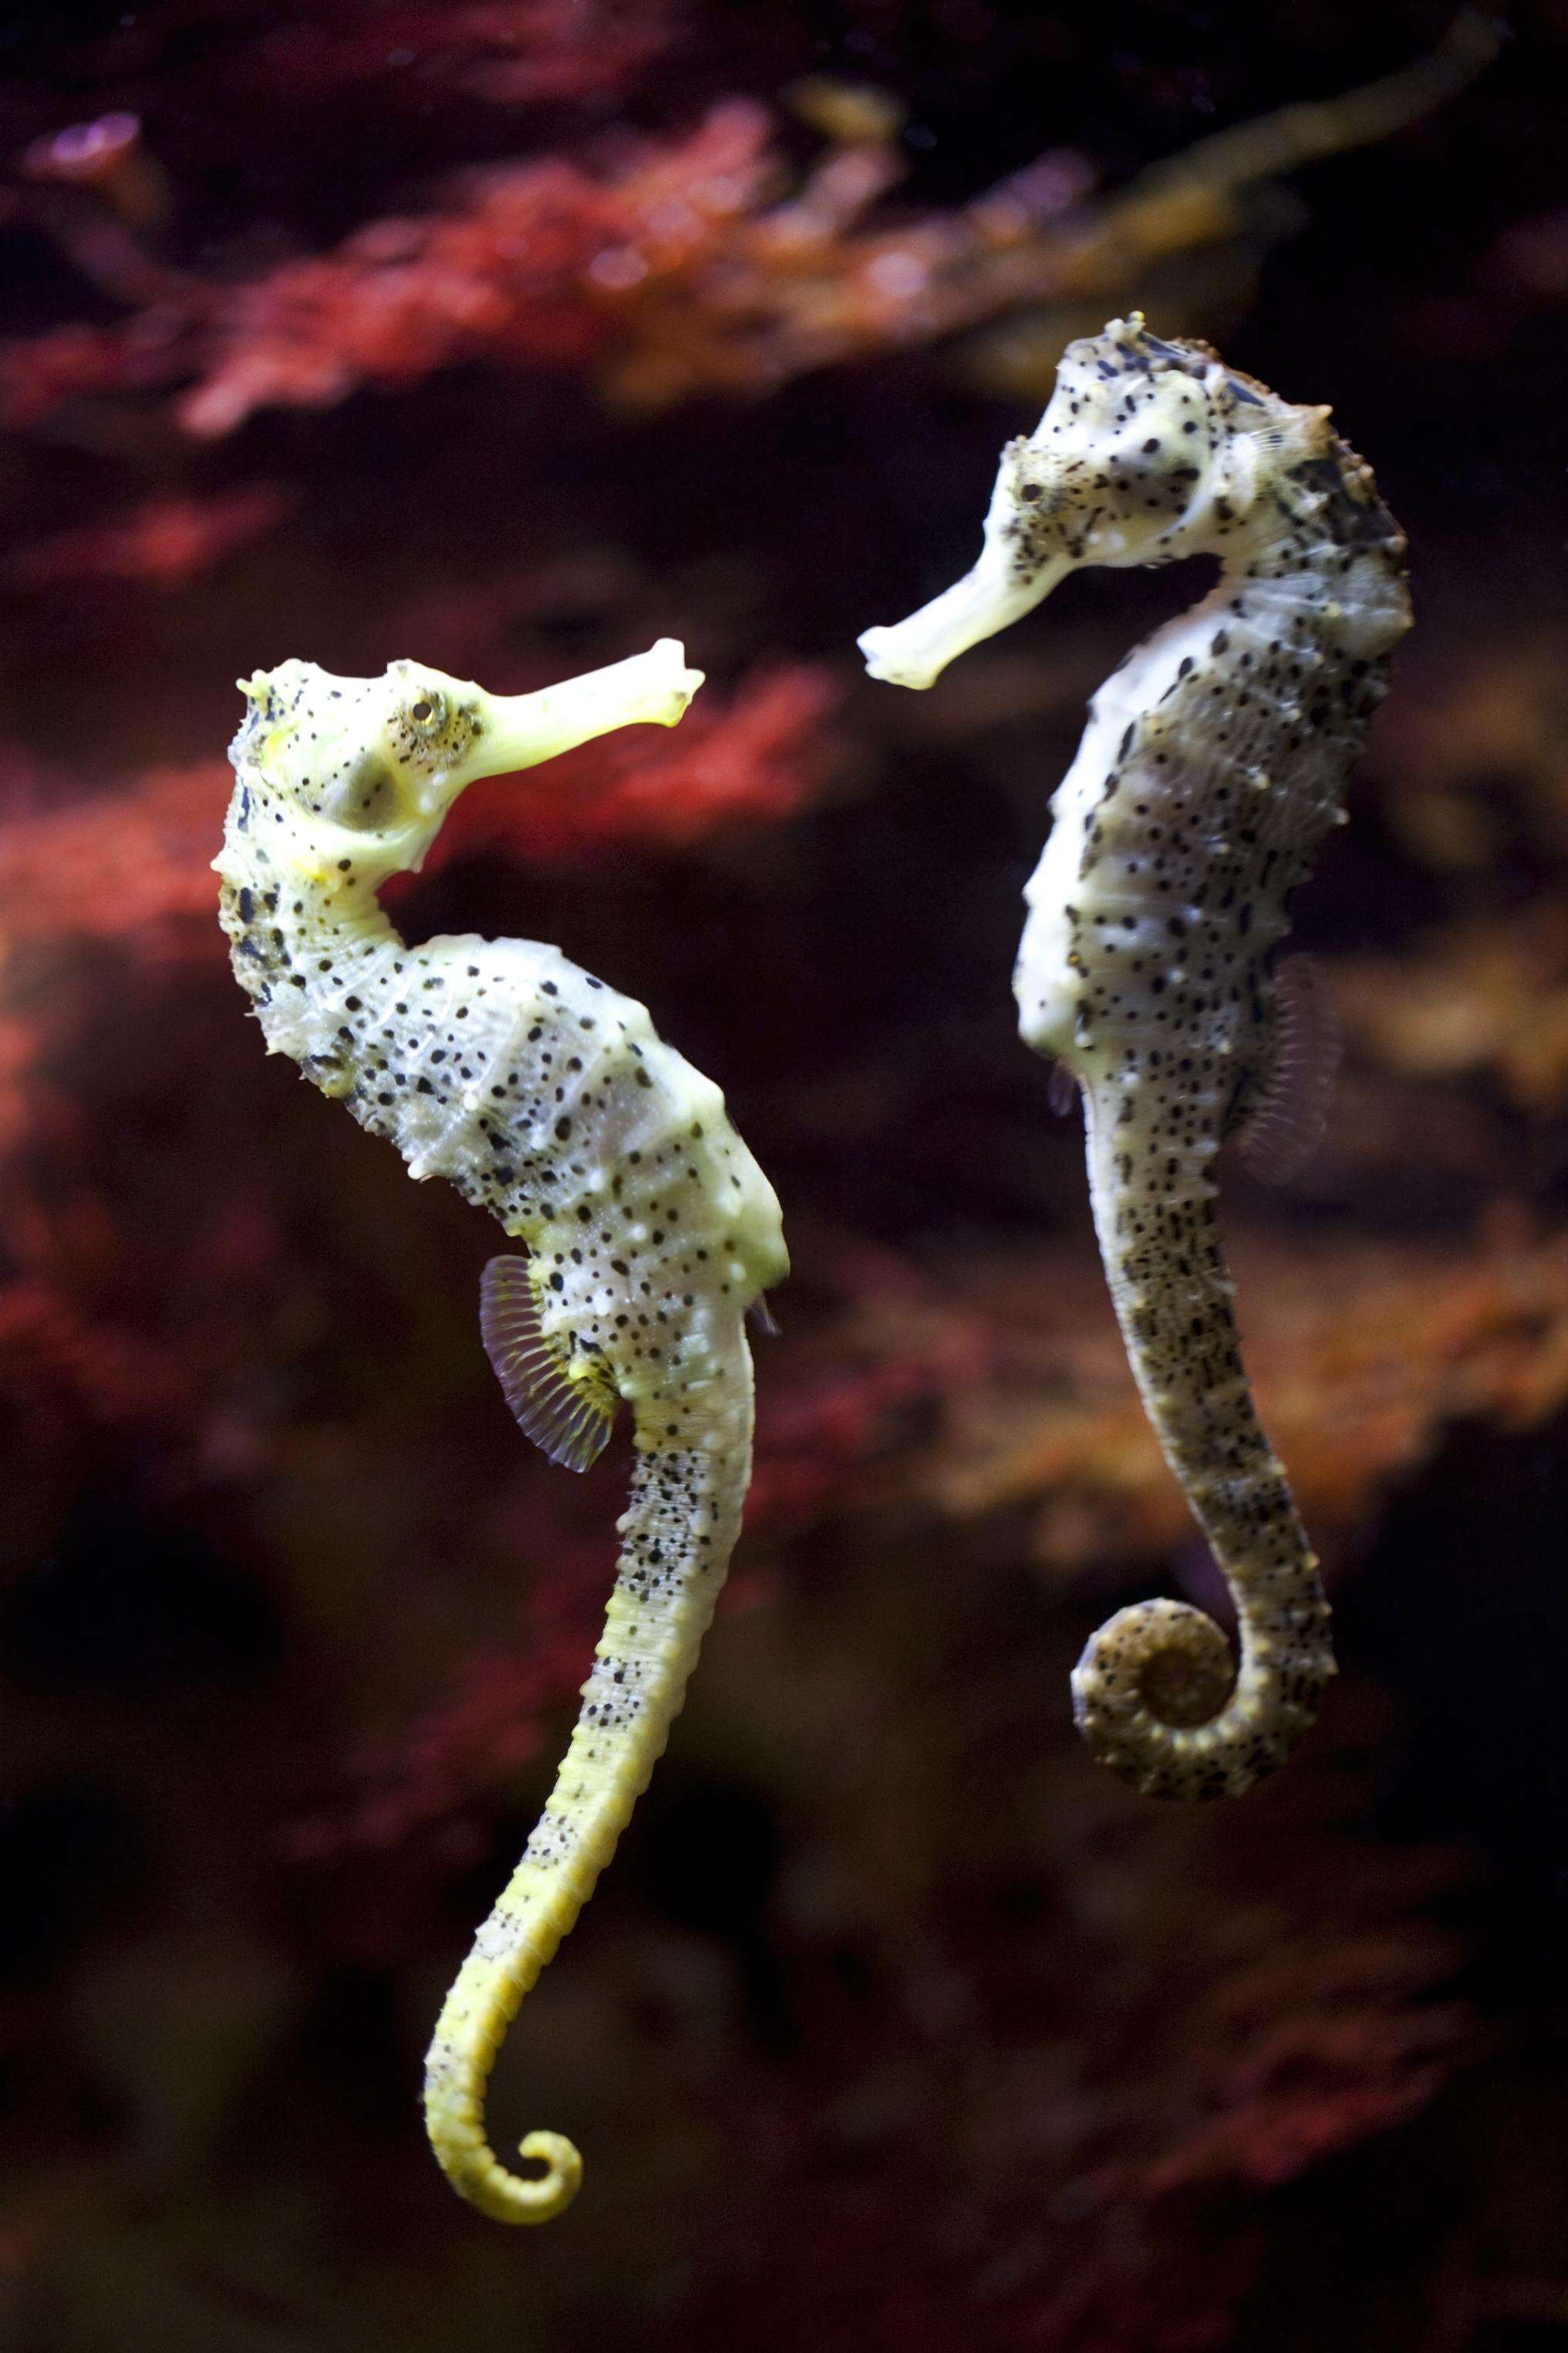 Pair of wild seahorses